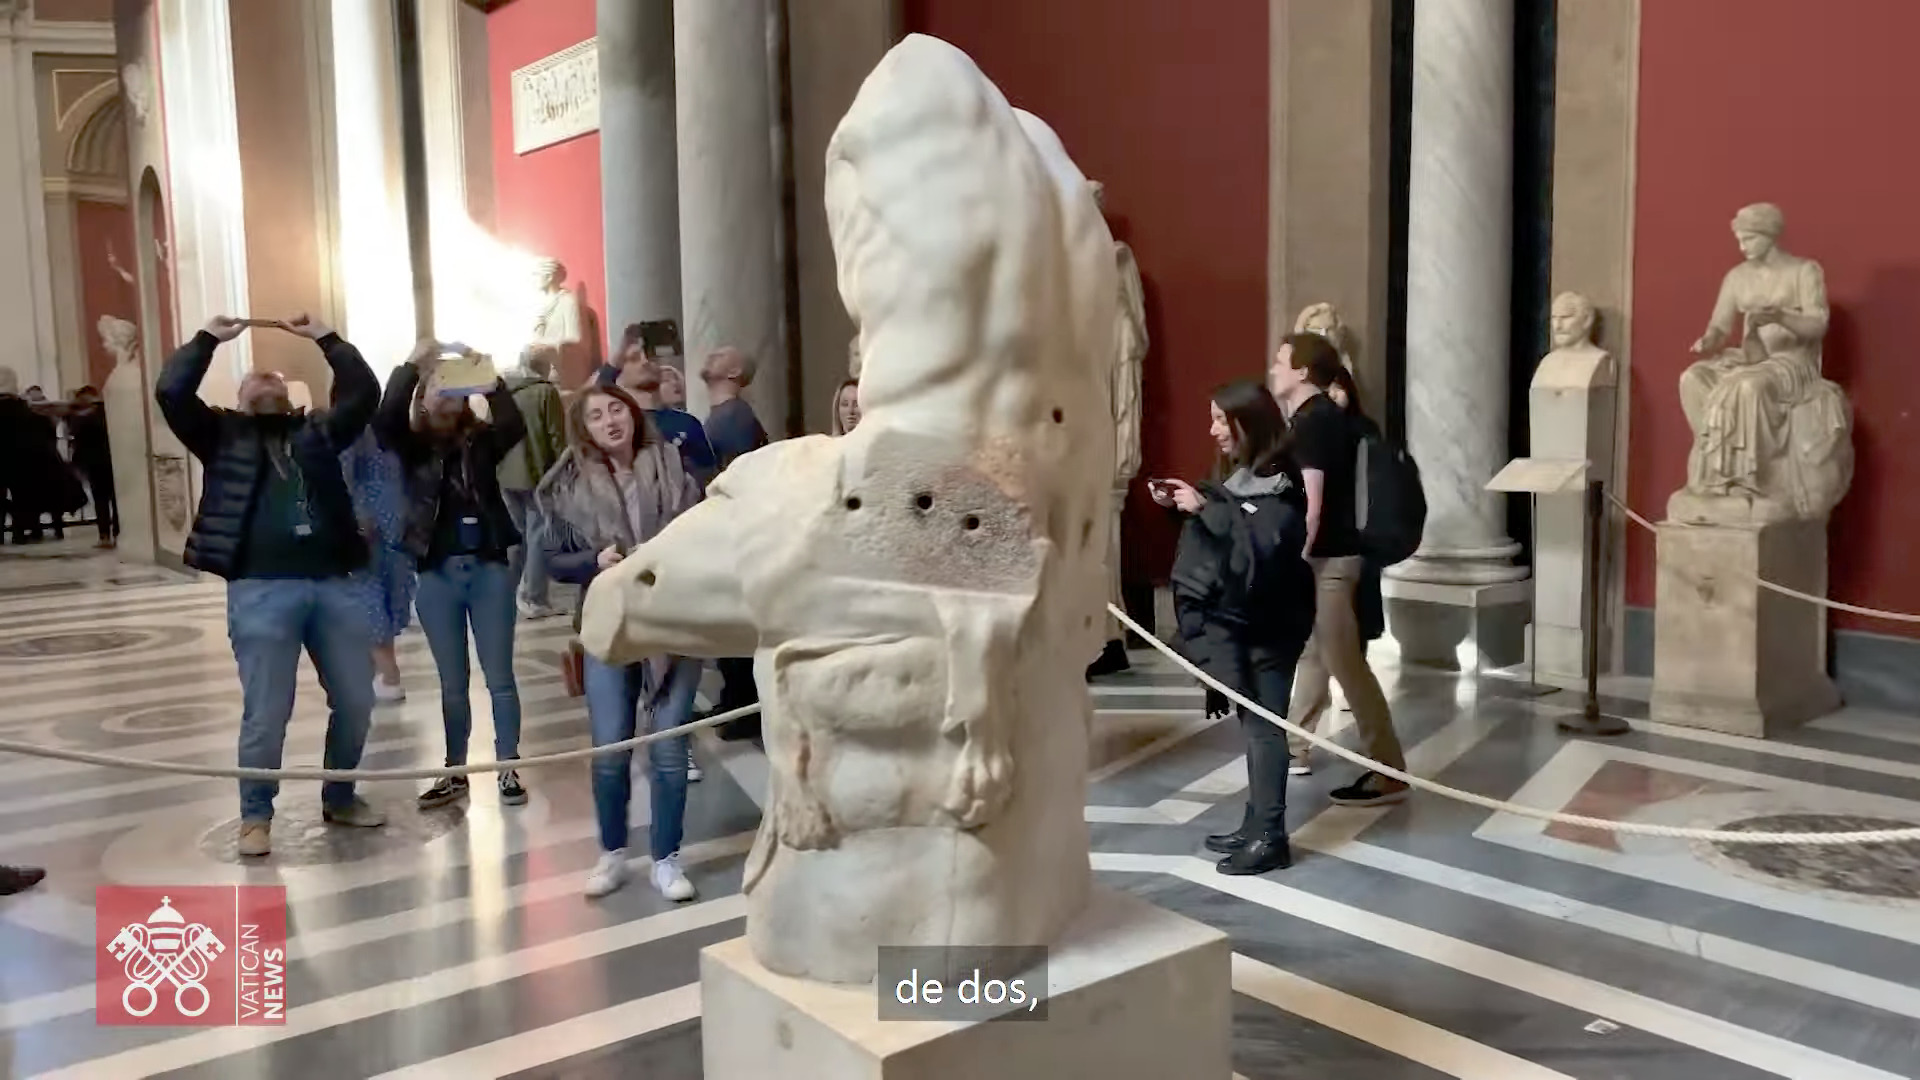 Le Torse du Belvédère, capture @ Musées du Vatican "Beauté cachée"